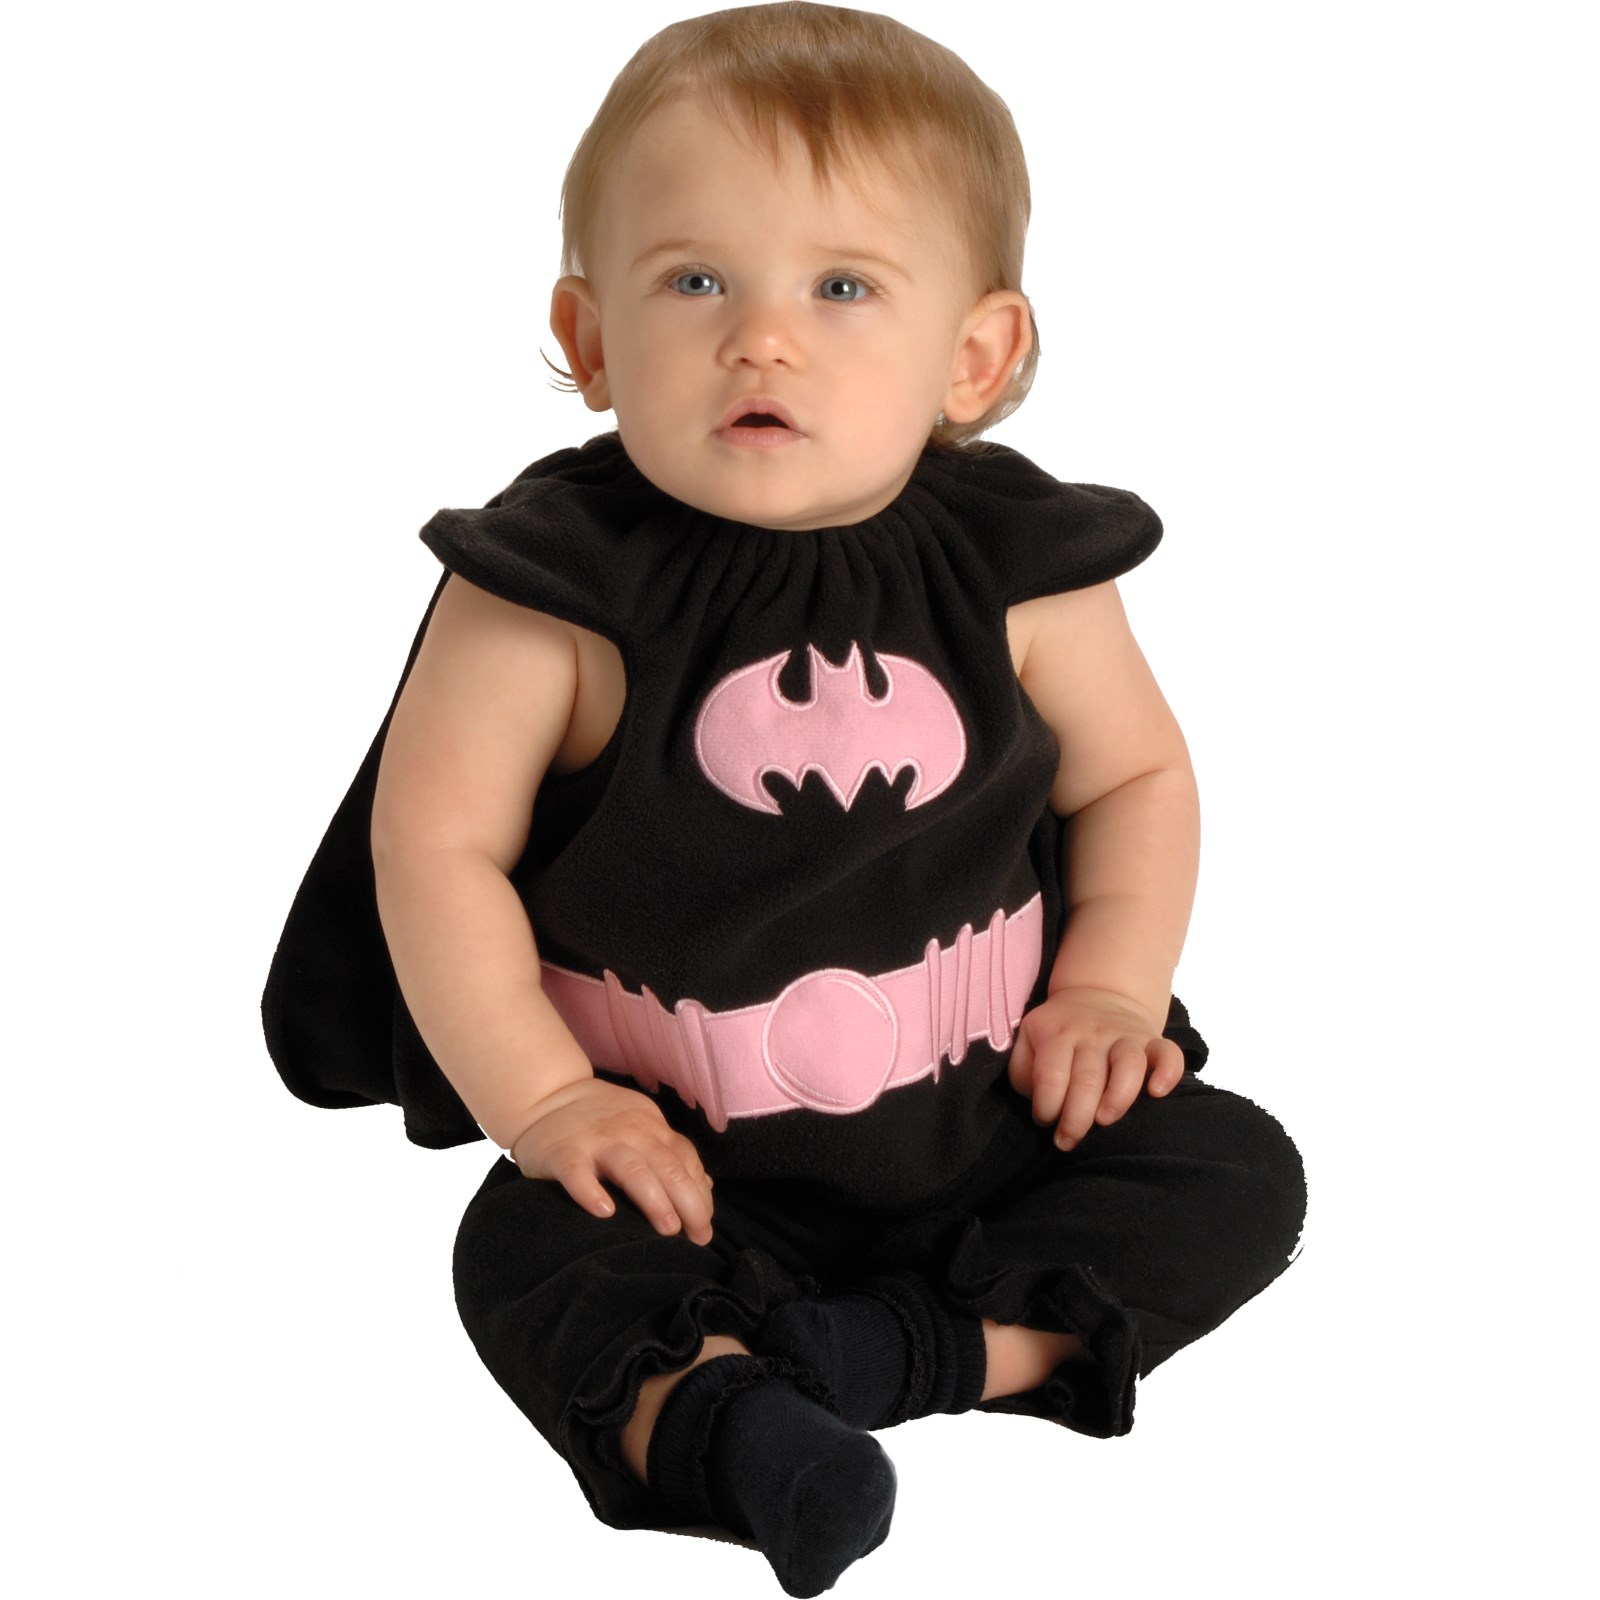 Batgirl Bib Newborn Costume